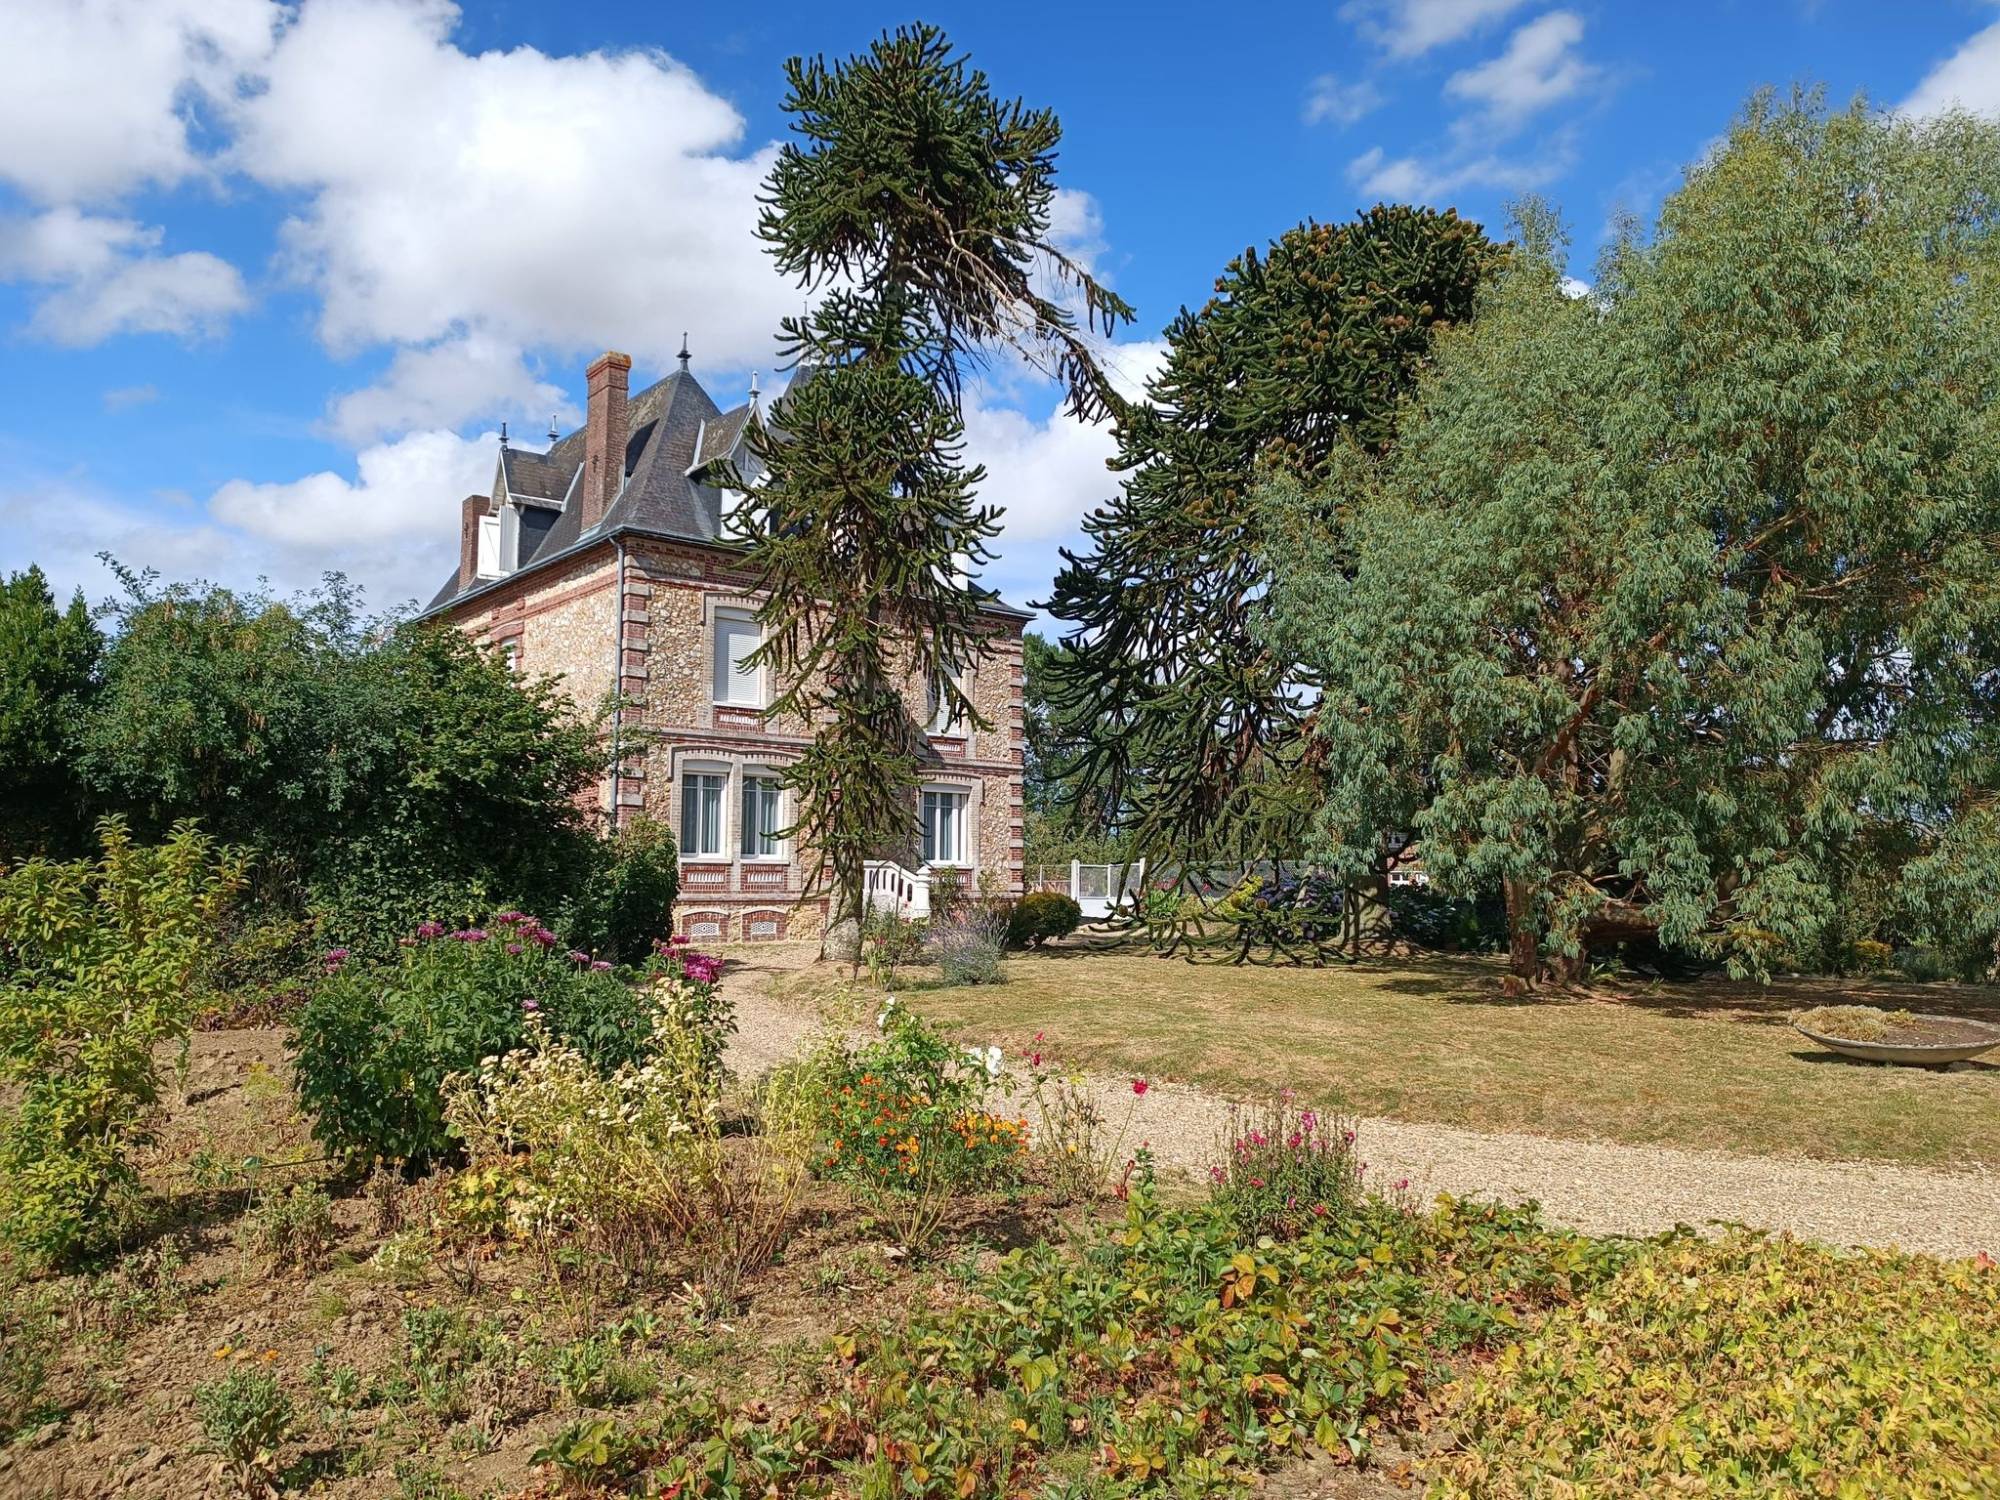 L’Agence Terres et Demeures de Normande Eure 27, vous invite à venir découvrir cette jolie propriété édifiée sur un parc arboré de plus de 9000 m².